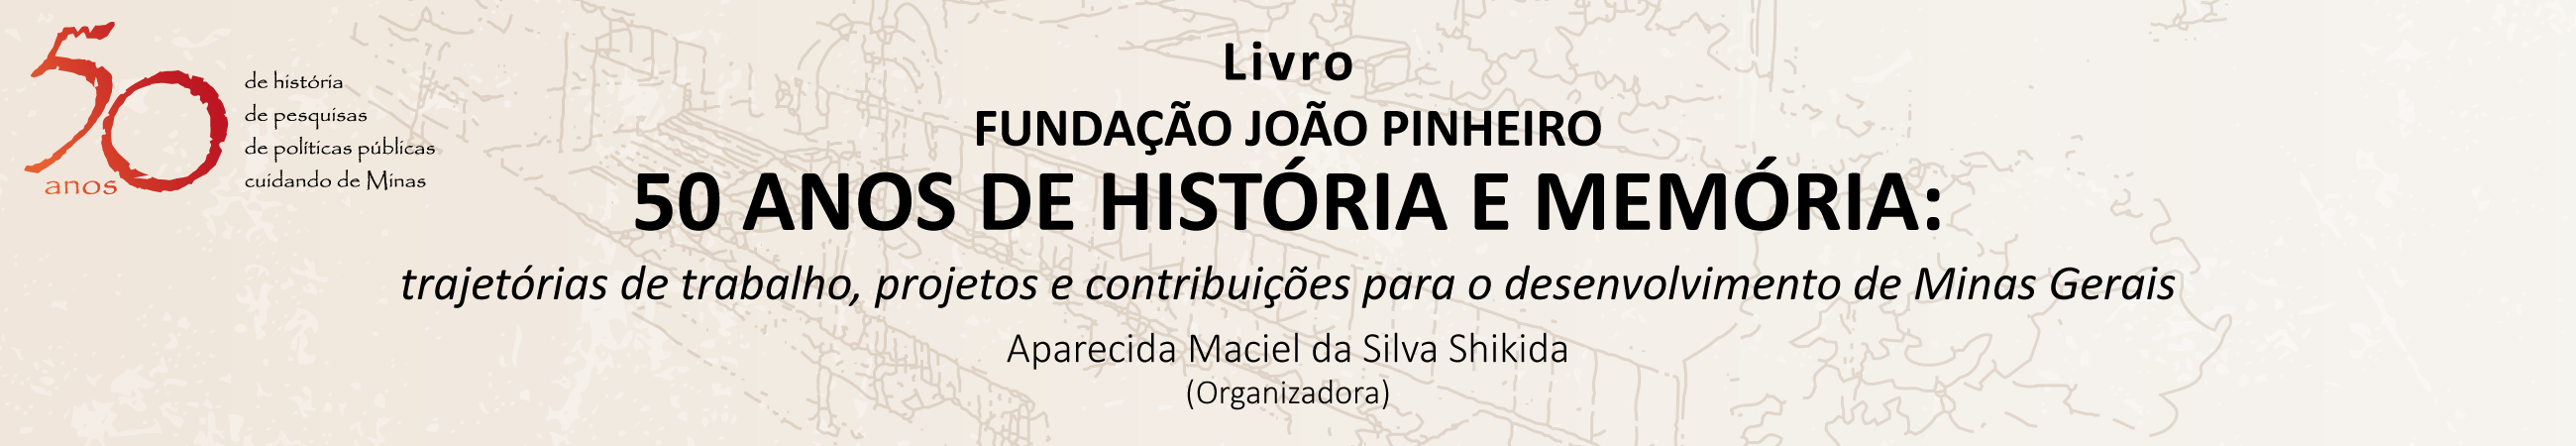 Livro Fundação João Pinheiro - 50 anos de história e memória